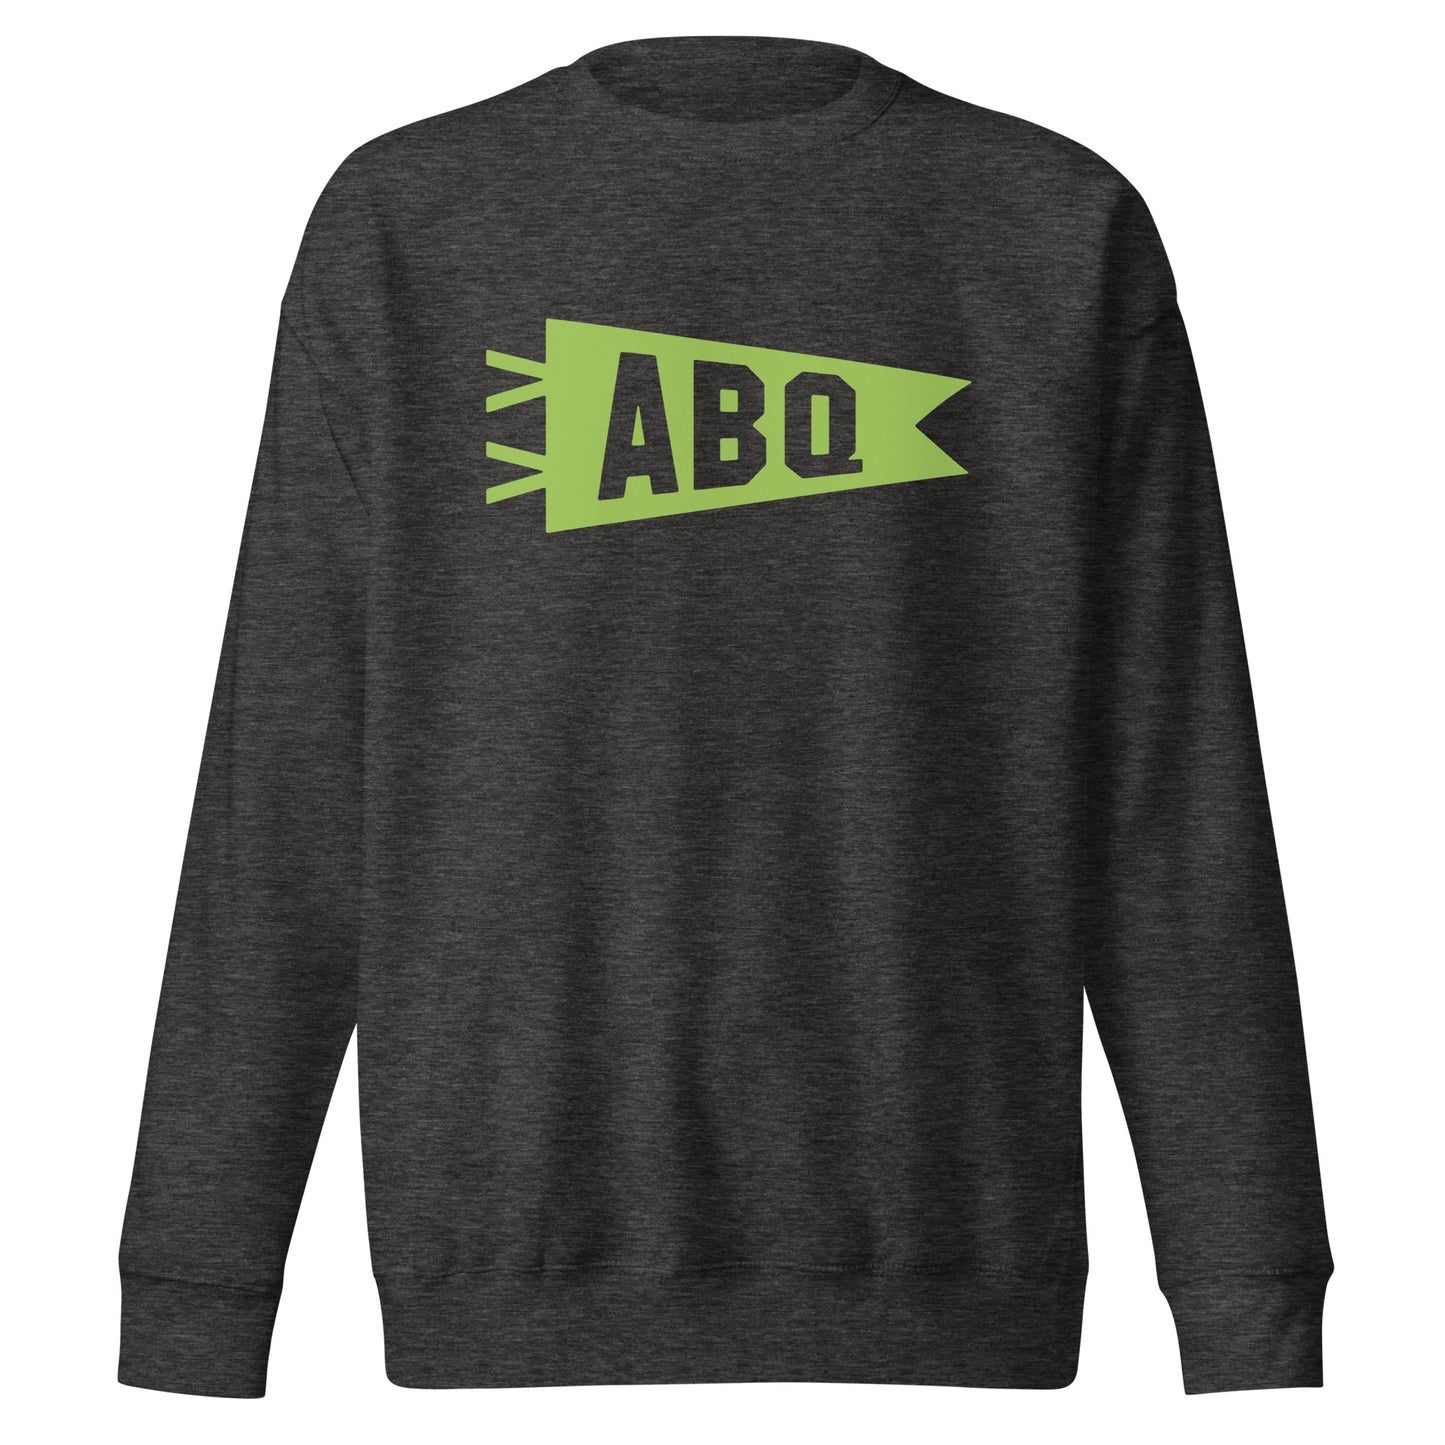 Airport Code Premium Sweatshirt - Green Graphic • ABQ Albuquerque • YHM Designs - Image 07